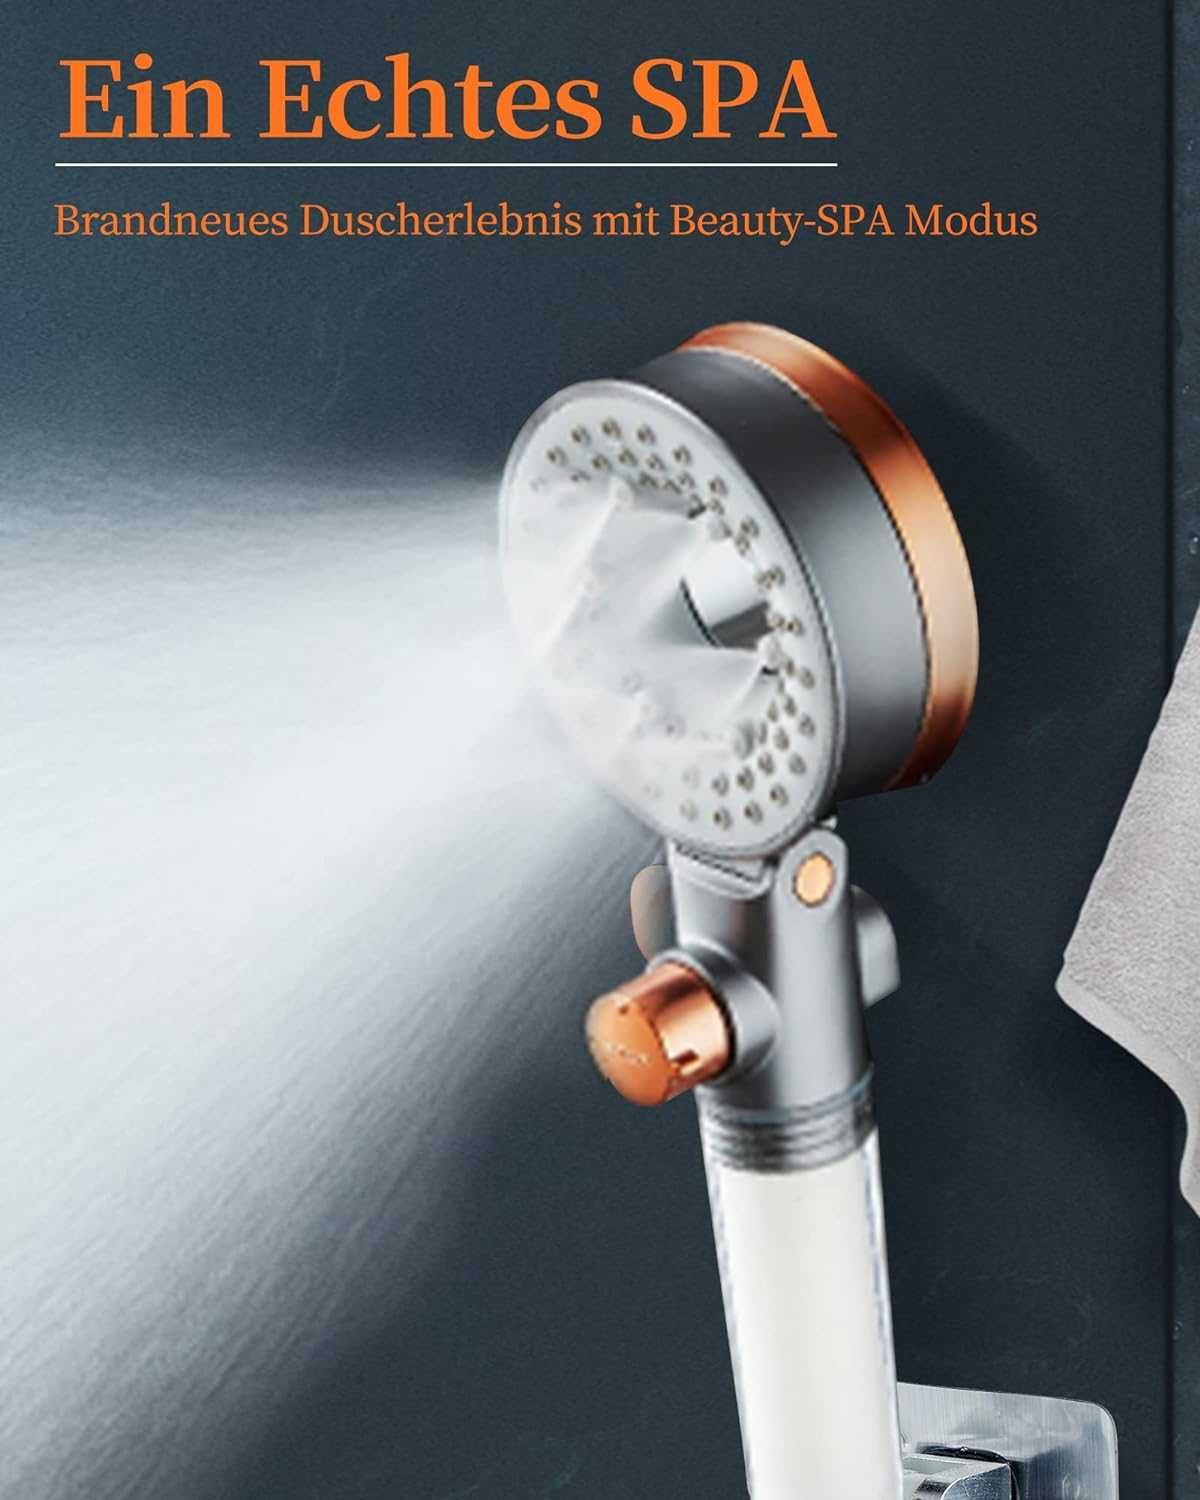 Beauty SPA słuchawka prysznicowa z filtrem, 3 rodzaje strumienia,